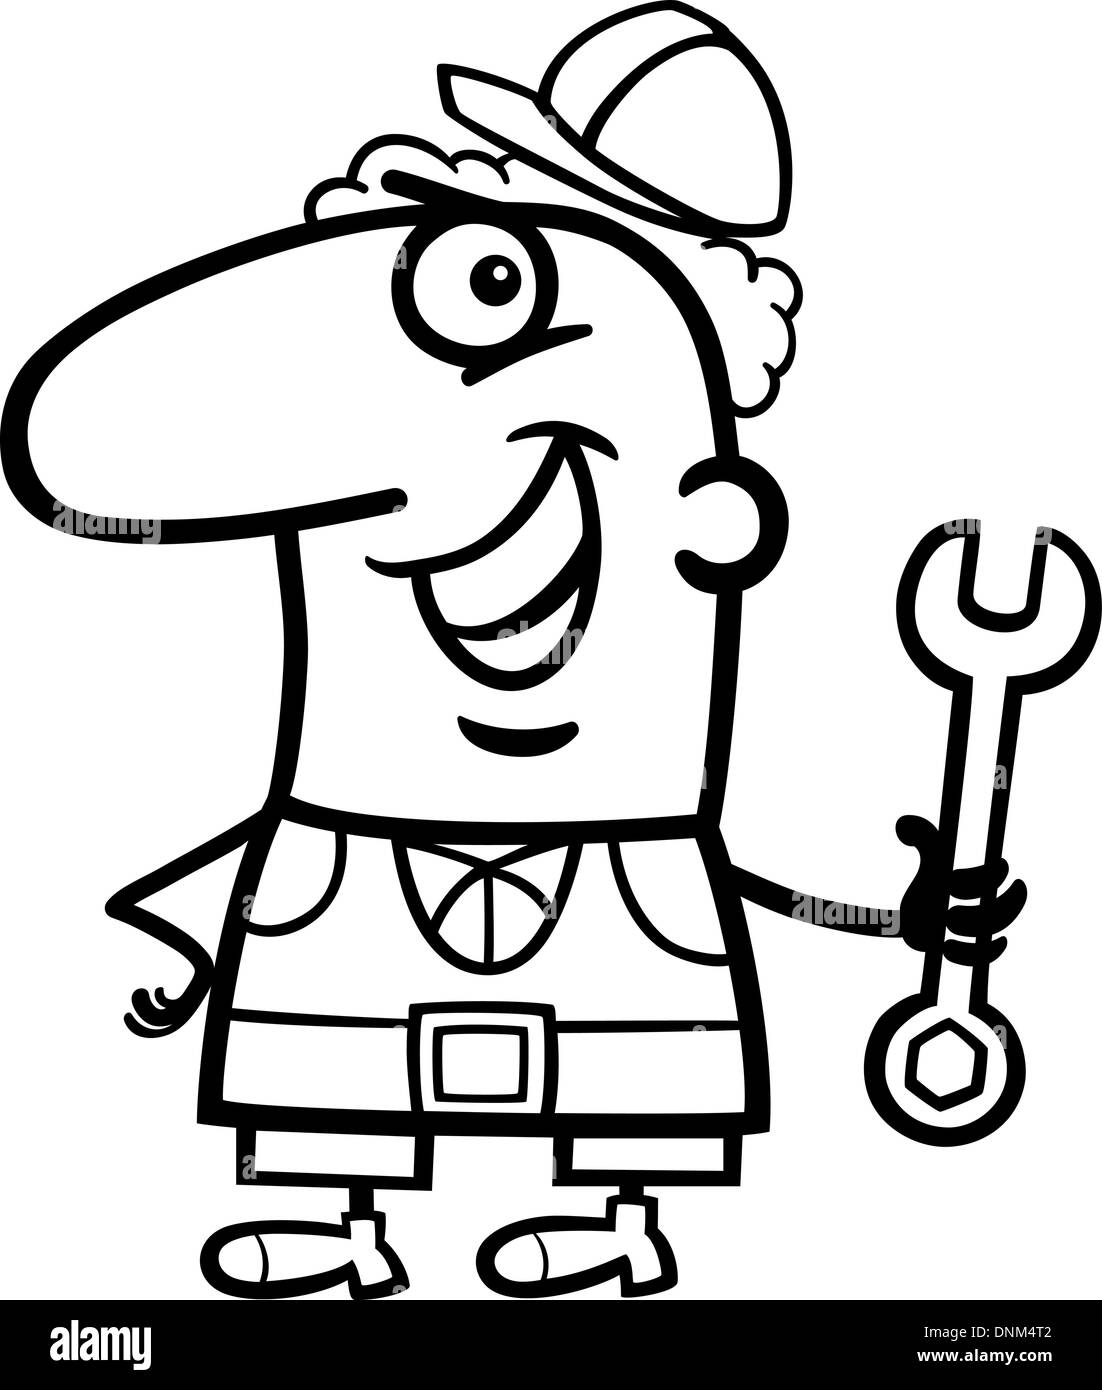 Schwarz / Weiß Cartoon Illustration der lustige Arbeiter mit Schraubenschlüssel Beruf Beruf Malvorlagen Stock Vektor